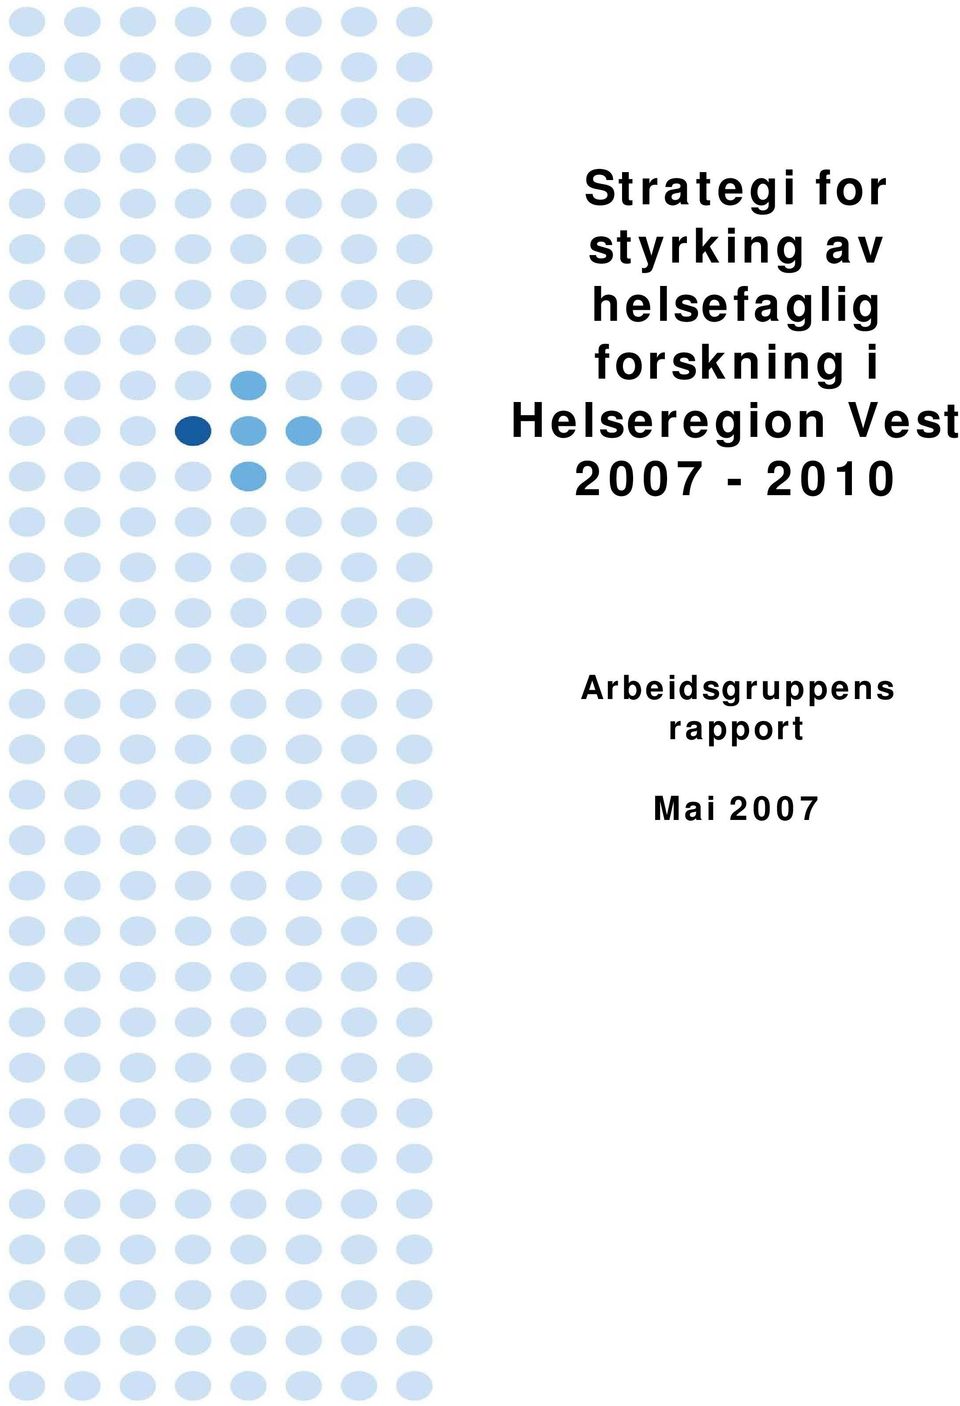 Helseregion Vest 2007-2010